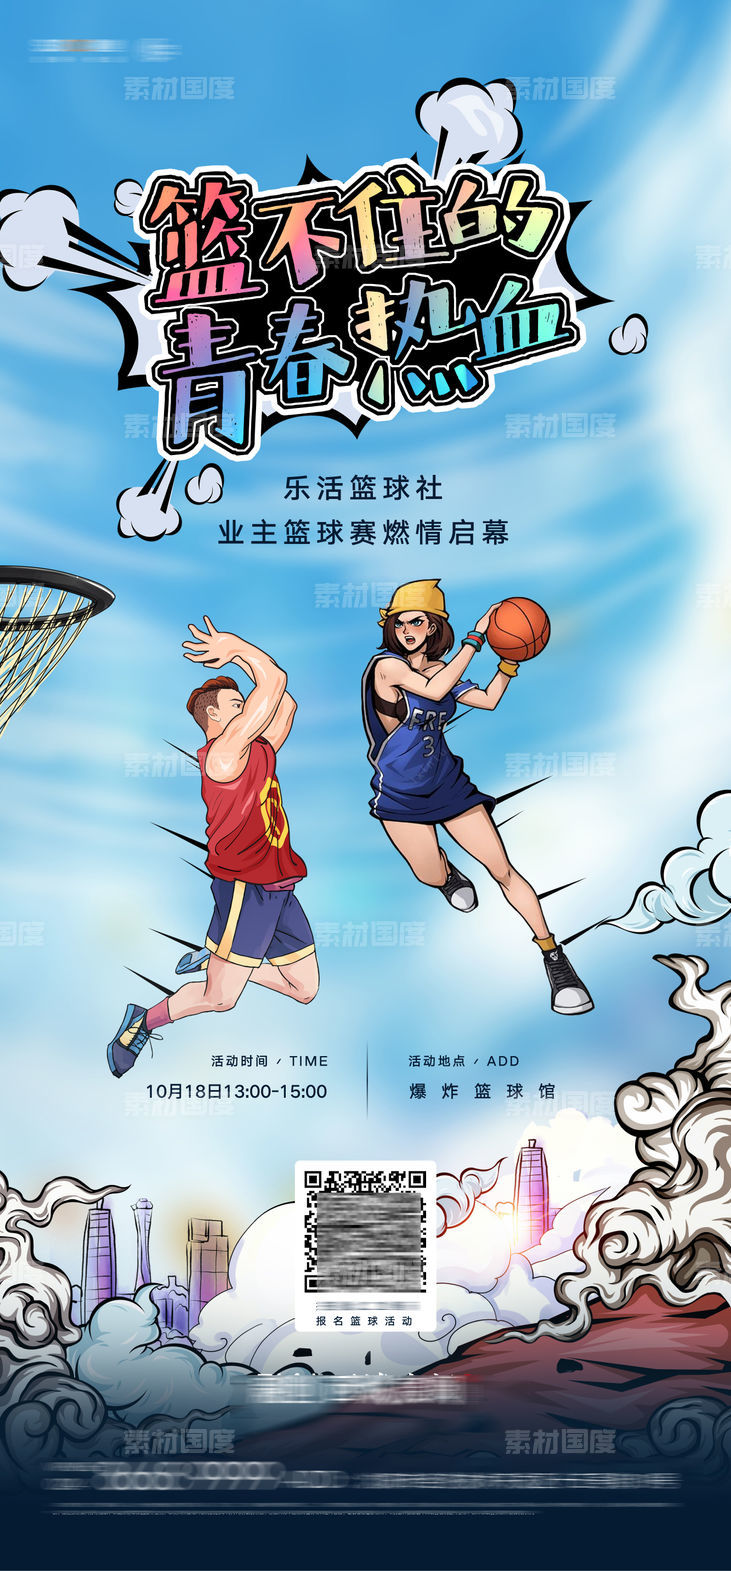 房地产社区青年篮球赛活动微信海报